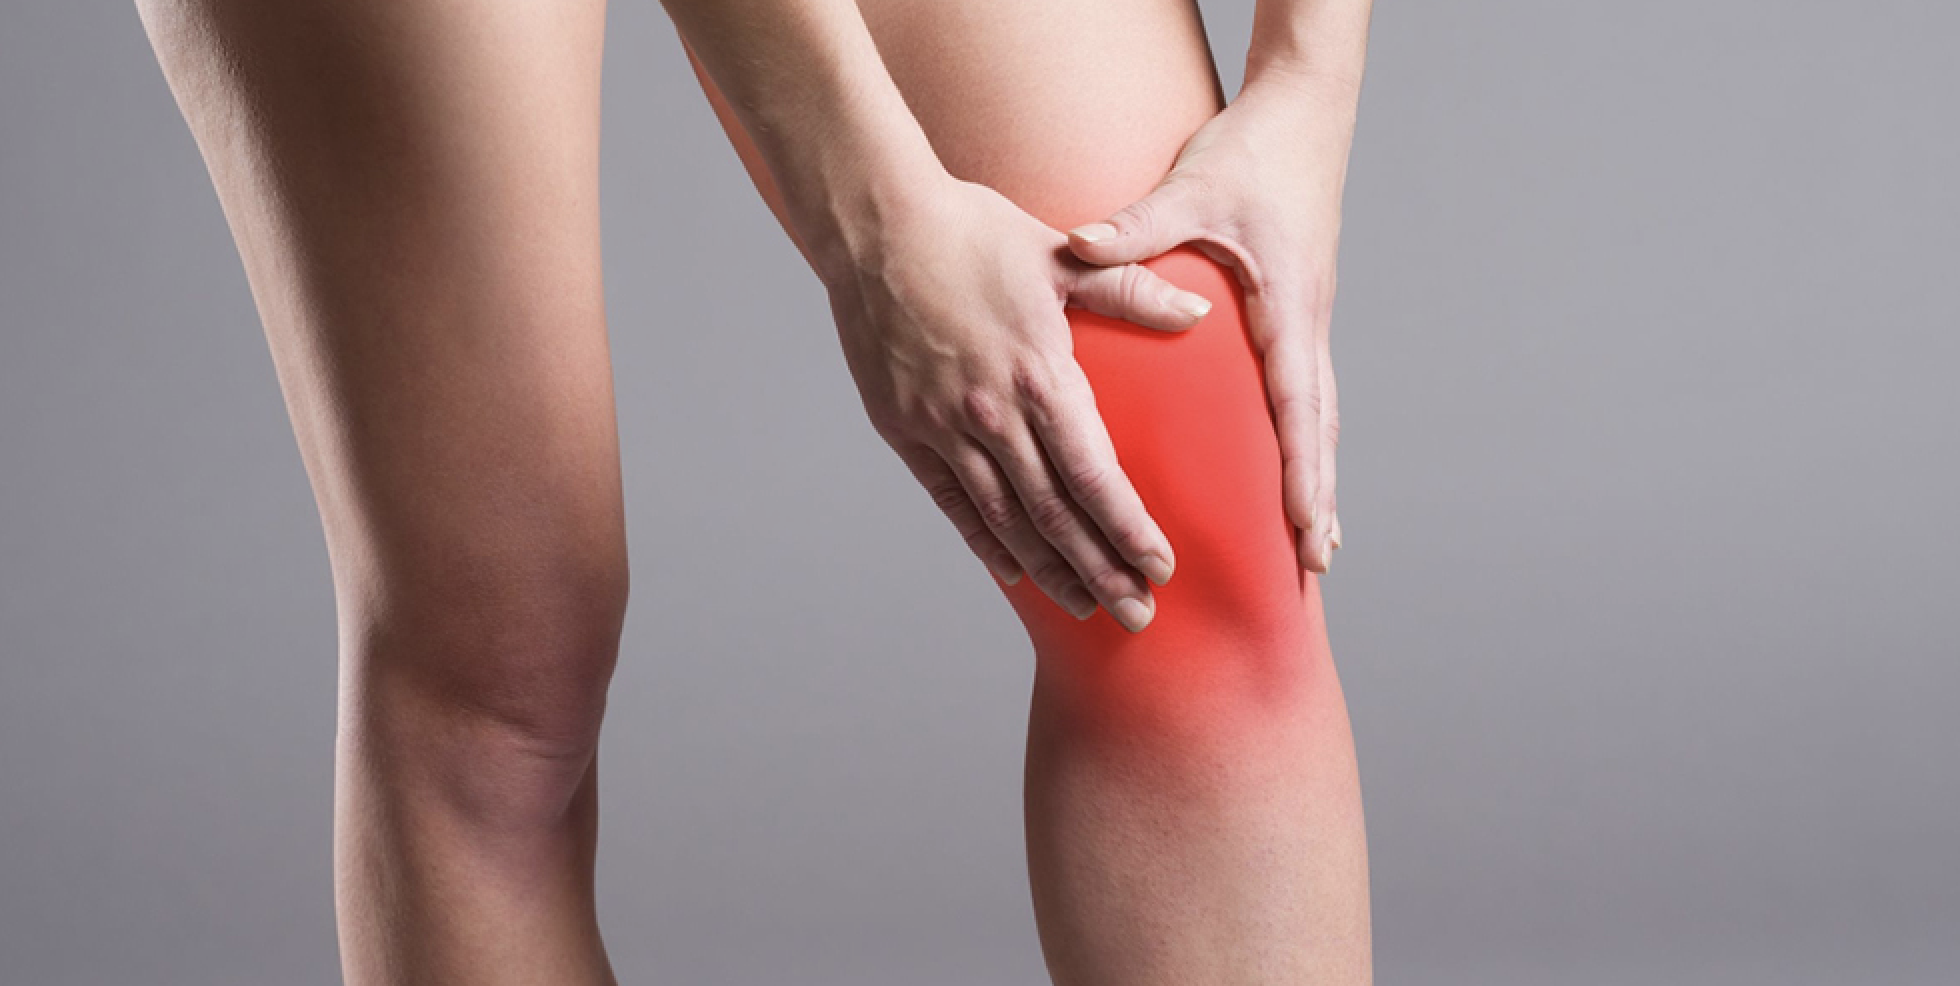 Blokade femoralnog živca u svrhu liječenja postoperativne boli nakon zamjene zgloba koljena